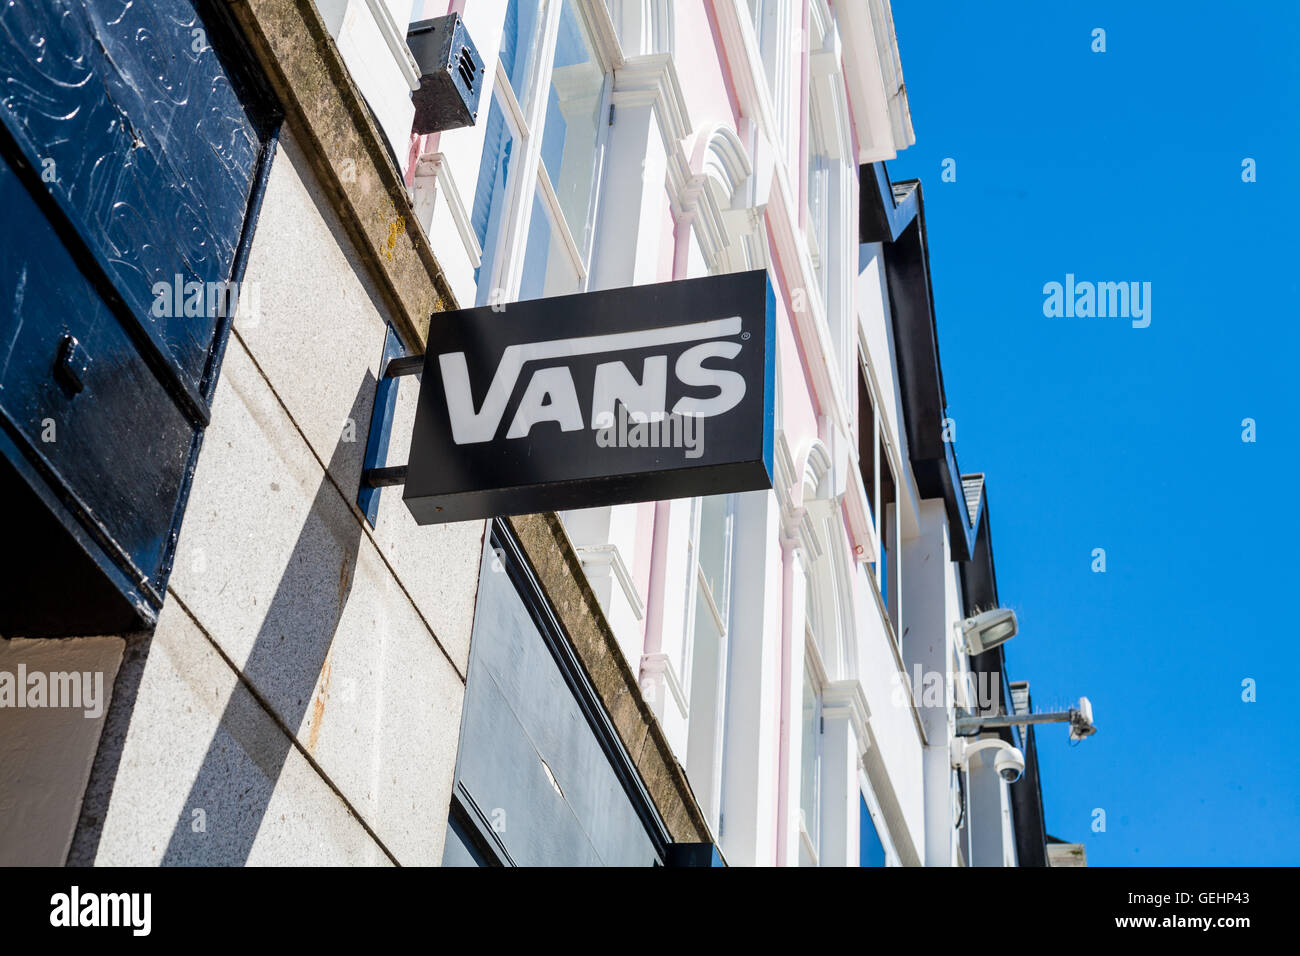 TRURO, CORNWALL, UK - 17. Juli 2016: Vans Shop Zeichen Logo. Architektonisches Detail der Ortsgruppe des Vans zeigt im Store branding Stockfoto